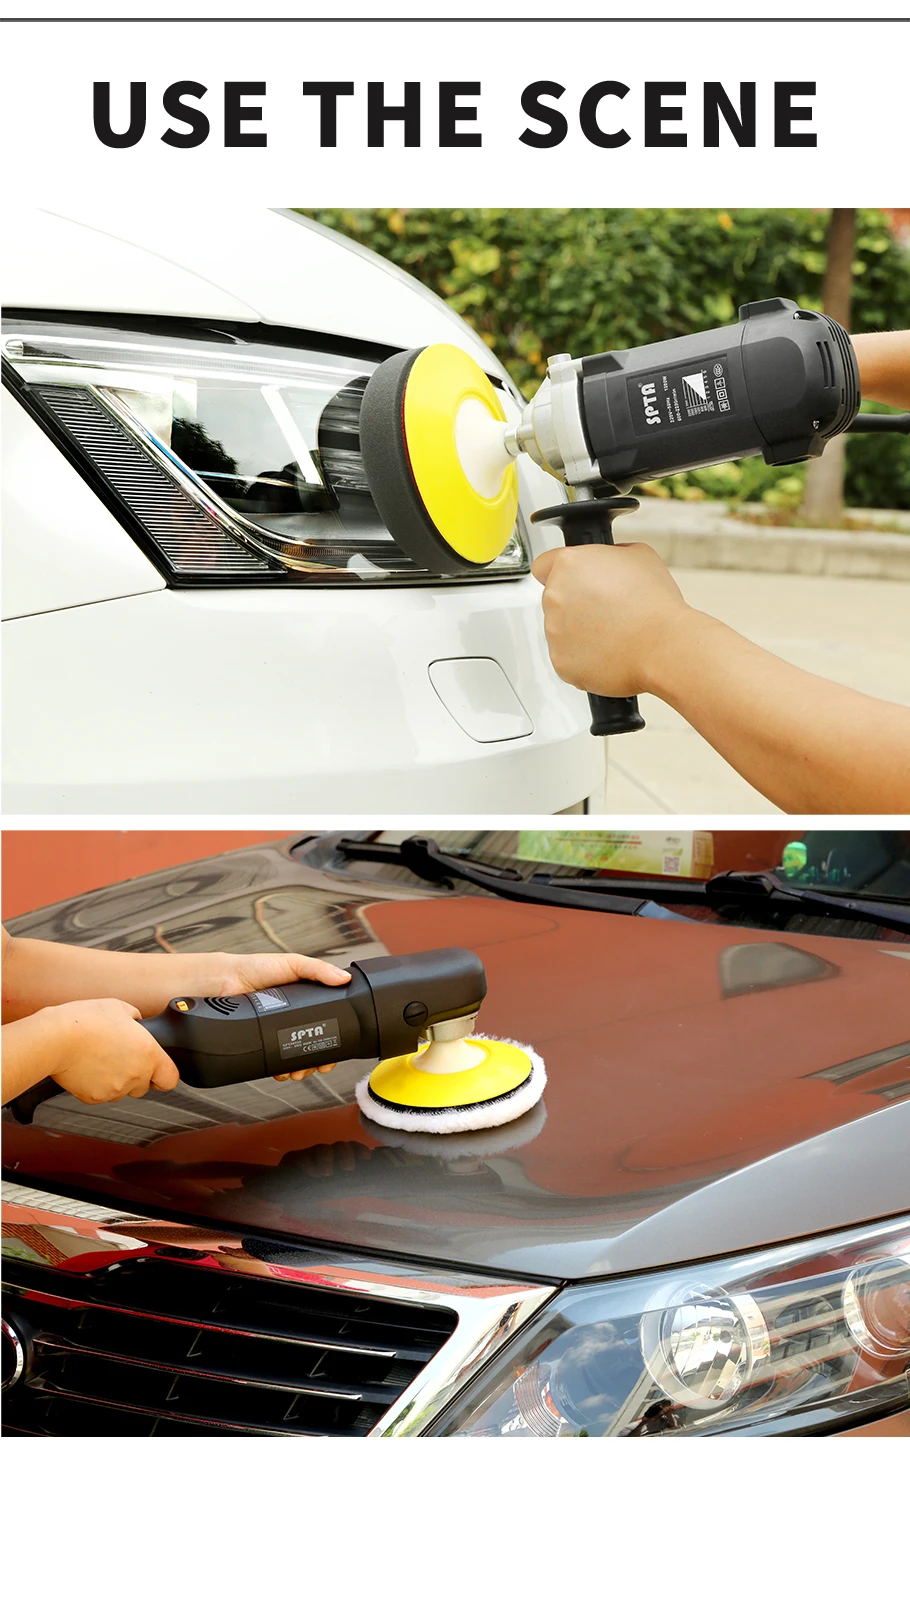 SPTA 5 6 дюймов опорная плита Backer Pad двойного действия автомобиля полировка буфер для полировки краска, лак товары для Машинка Для Полировки Автомобиля